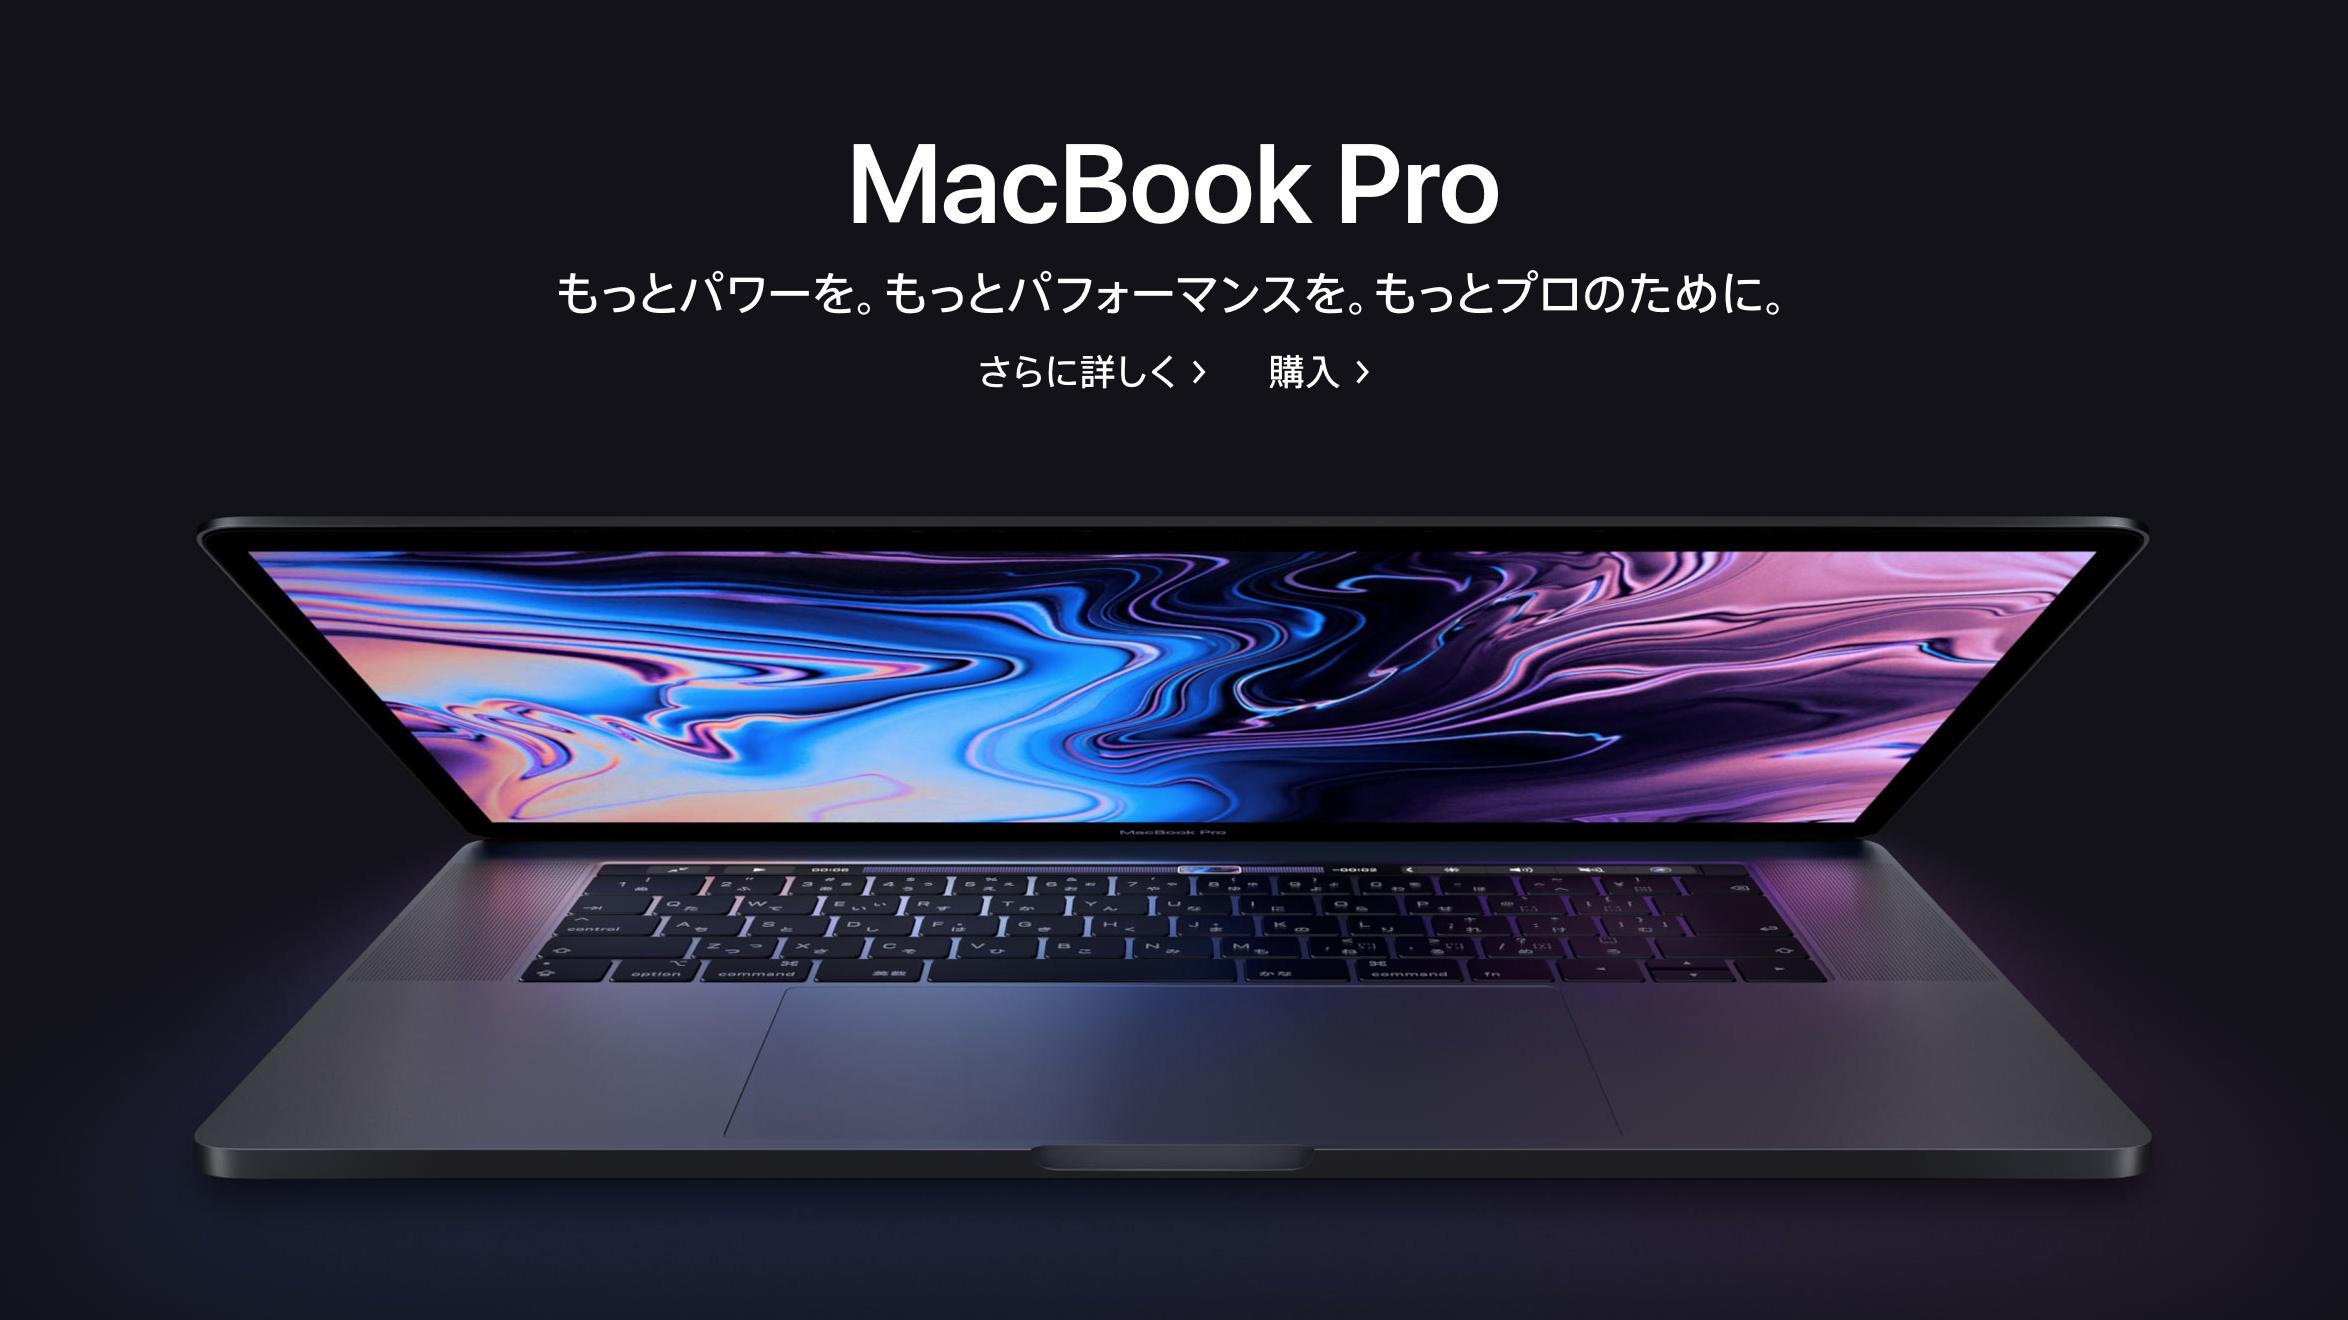 上位モデル Macbook Pro 15-inch i9/32GB/2TBスペック情報